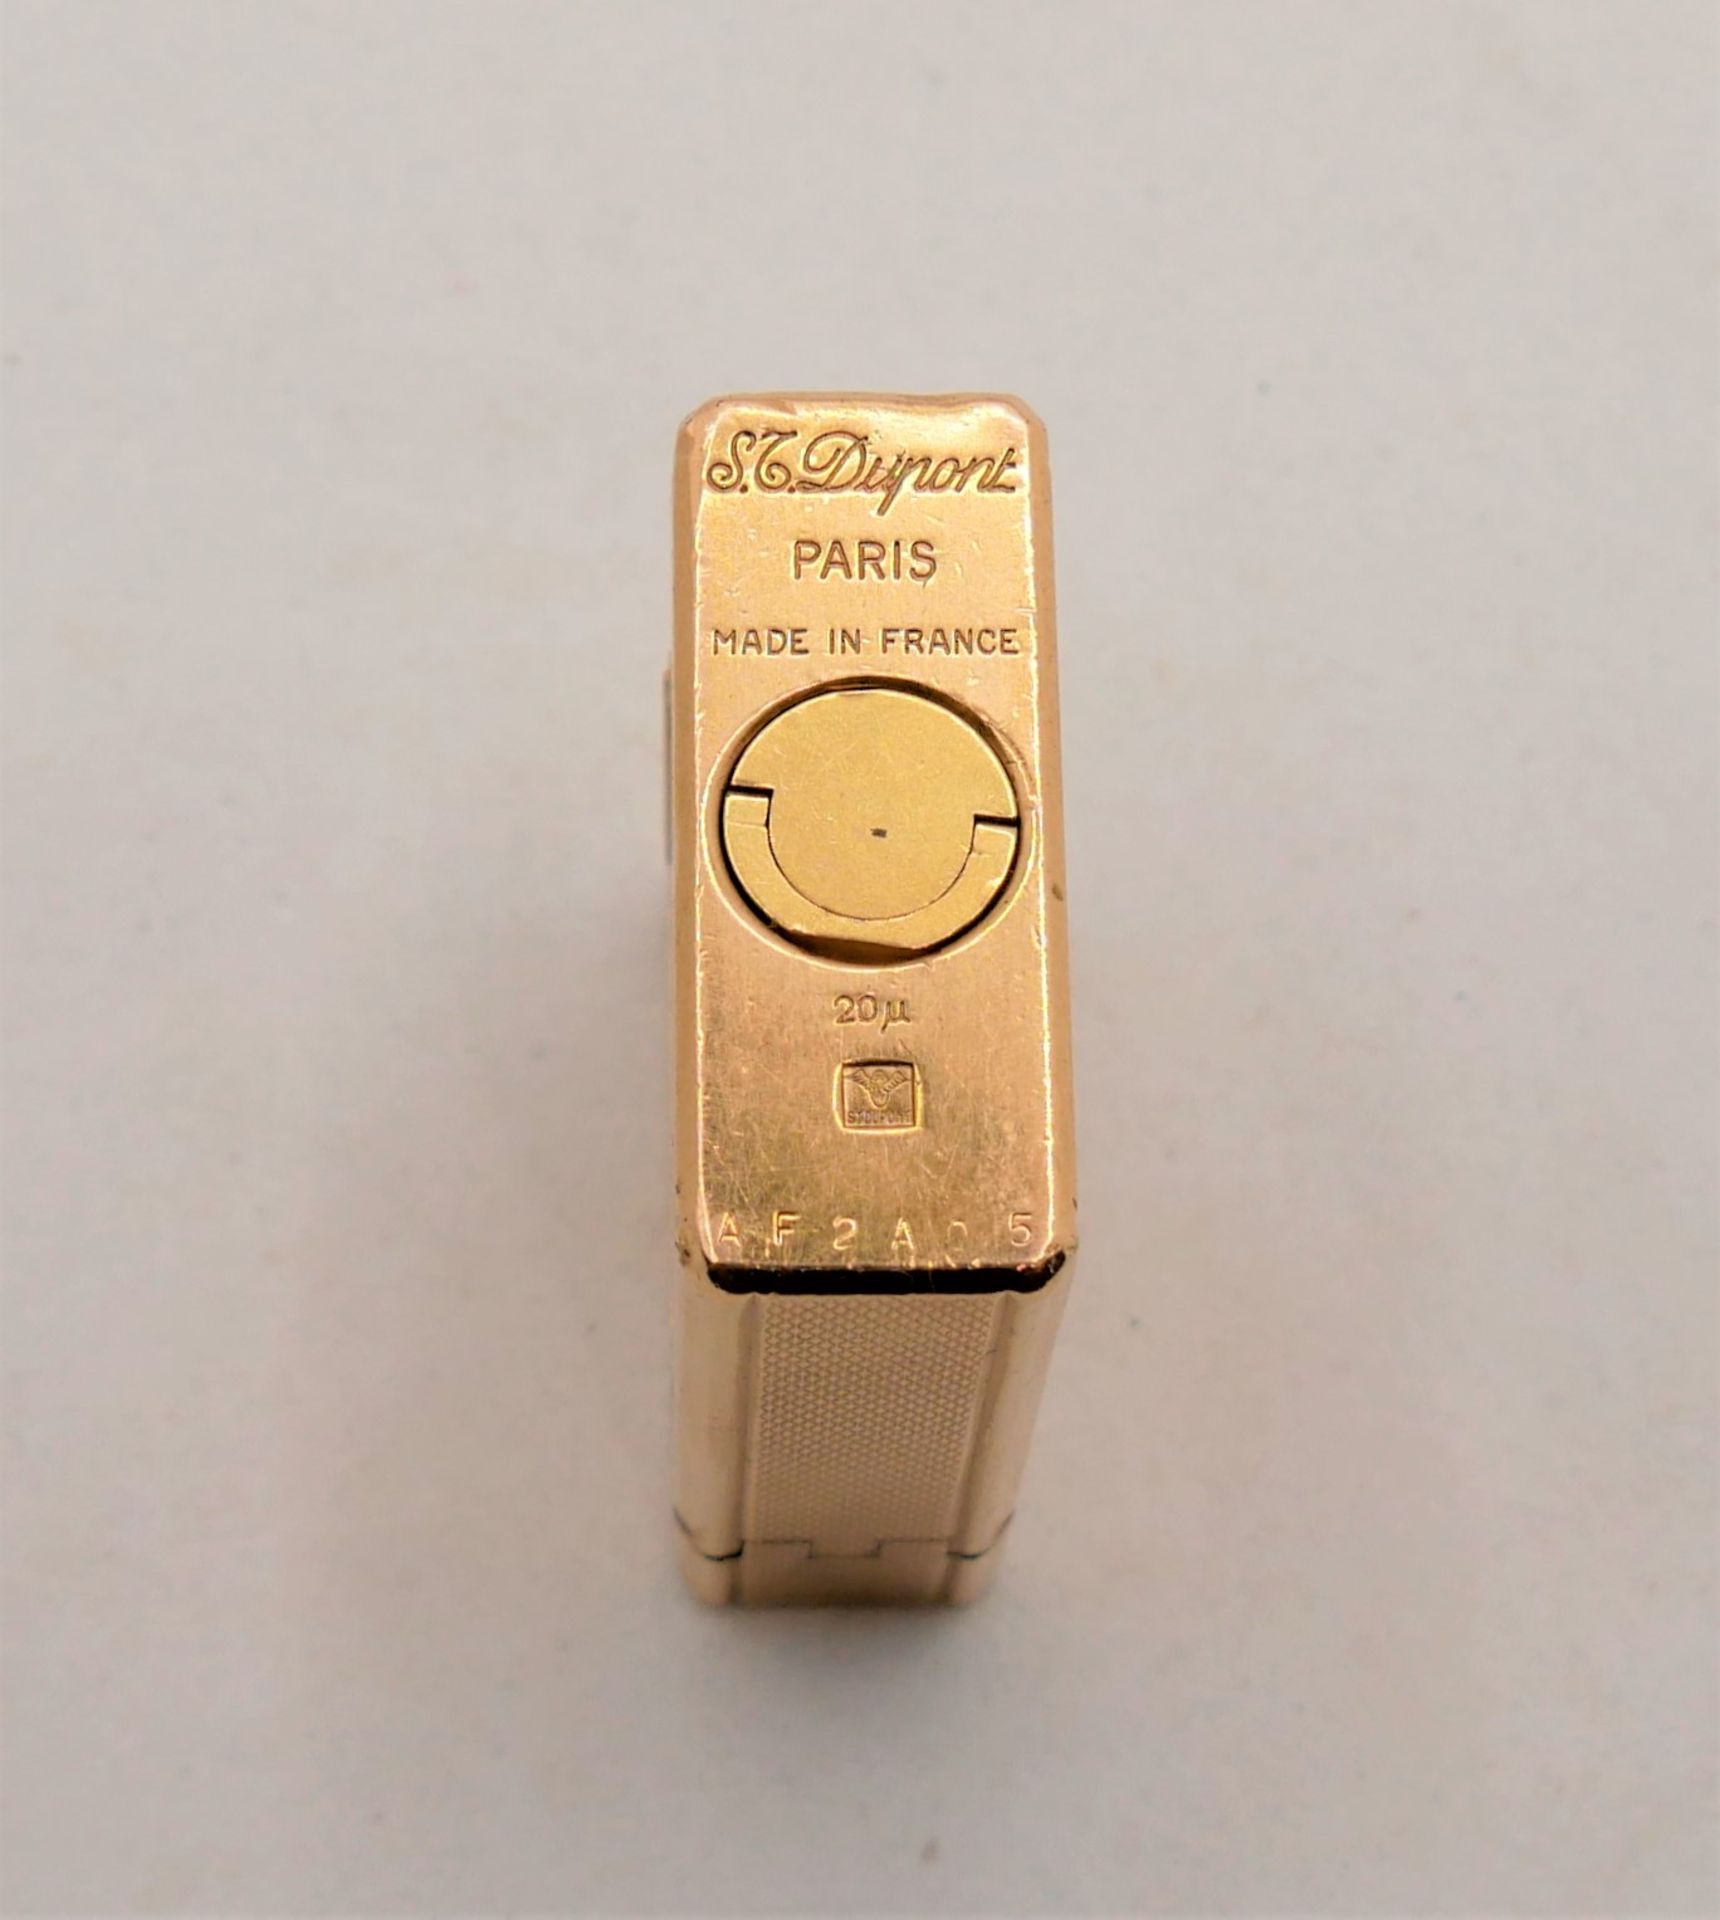 Feuerzeug S.T.Dupont Paris, Made in France, Nr. 20 u, vergoldet. Funktion geprüft. Gebrauchter - Image 4 of 4